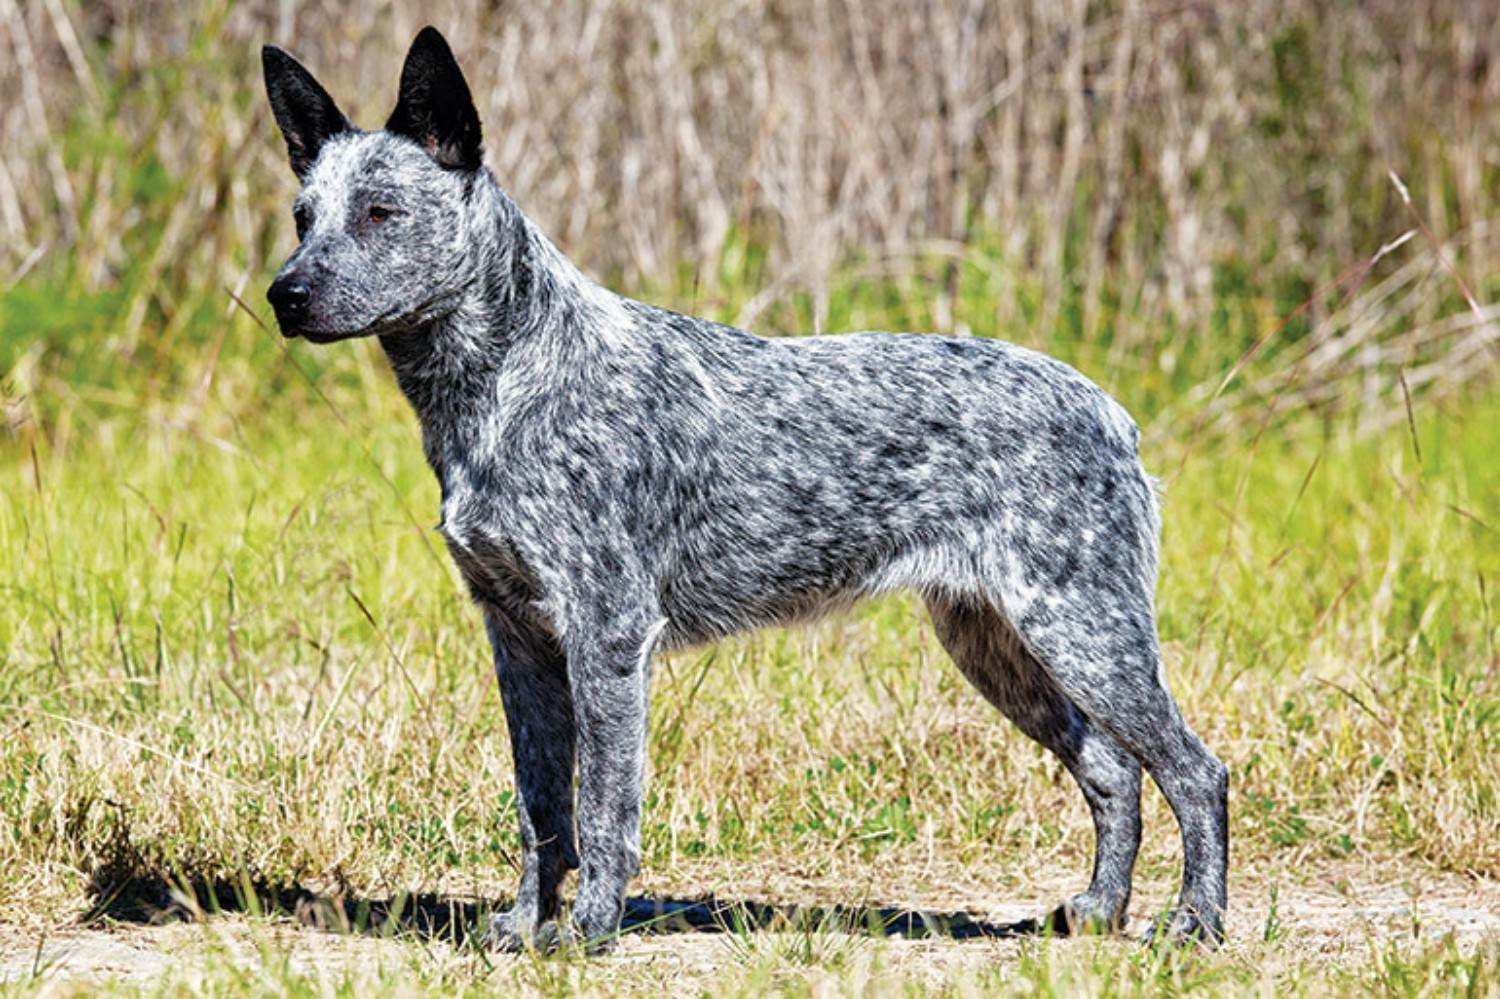 Австралийская пастушья собака: фото, описание породы, цена щенков